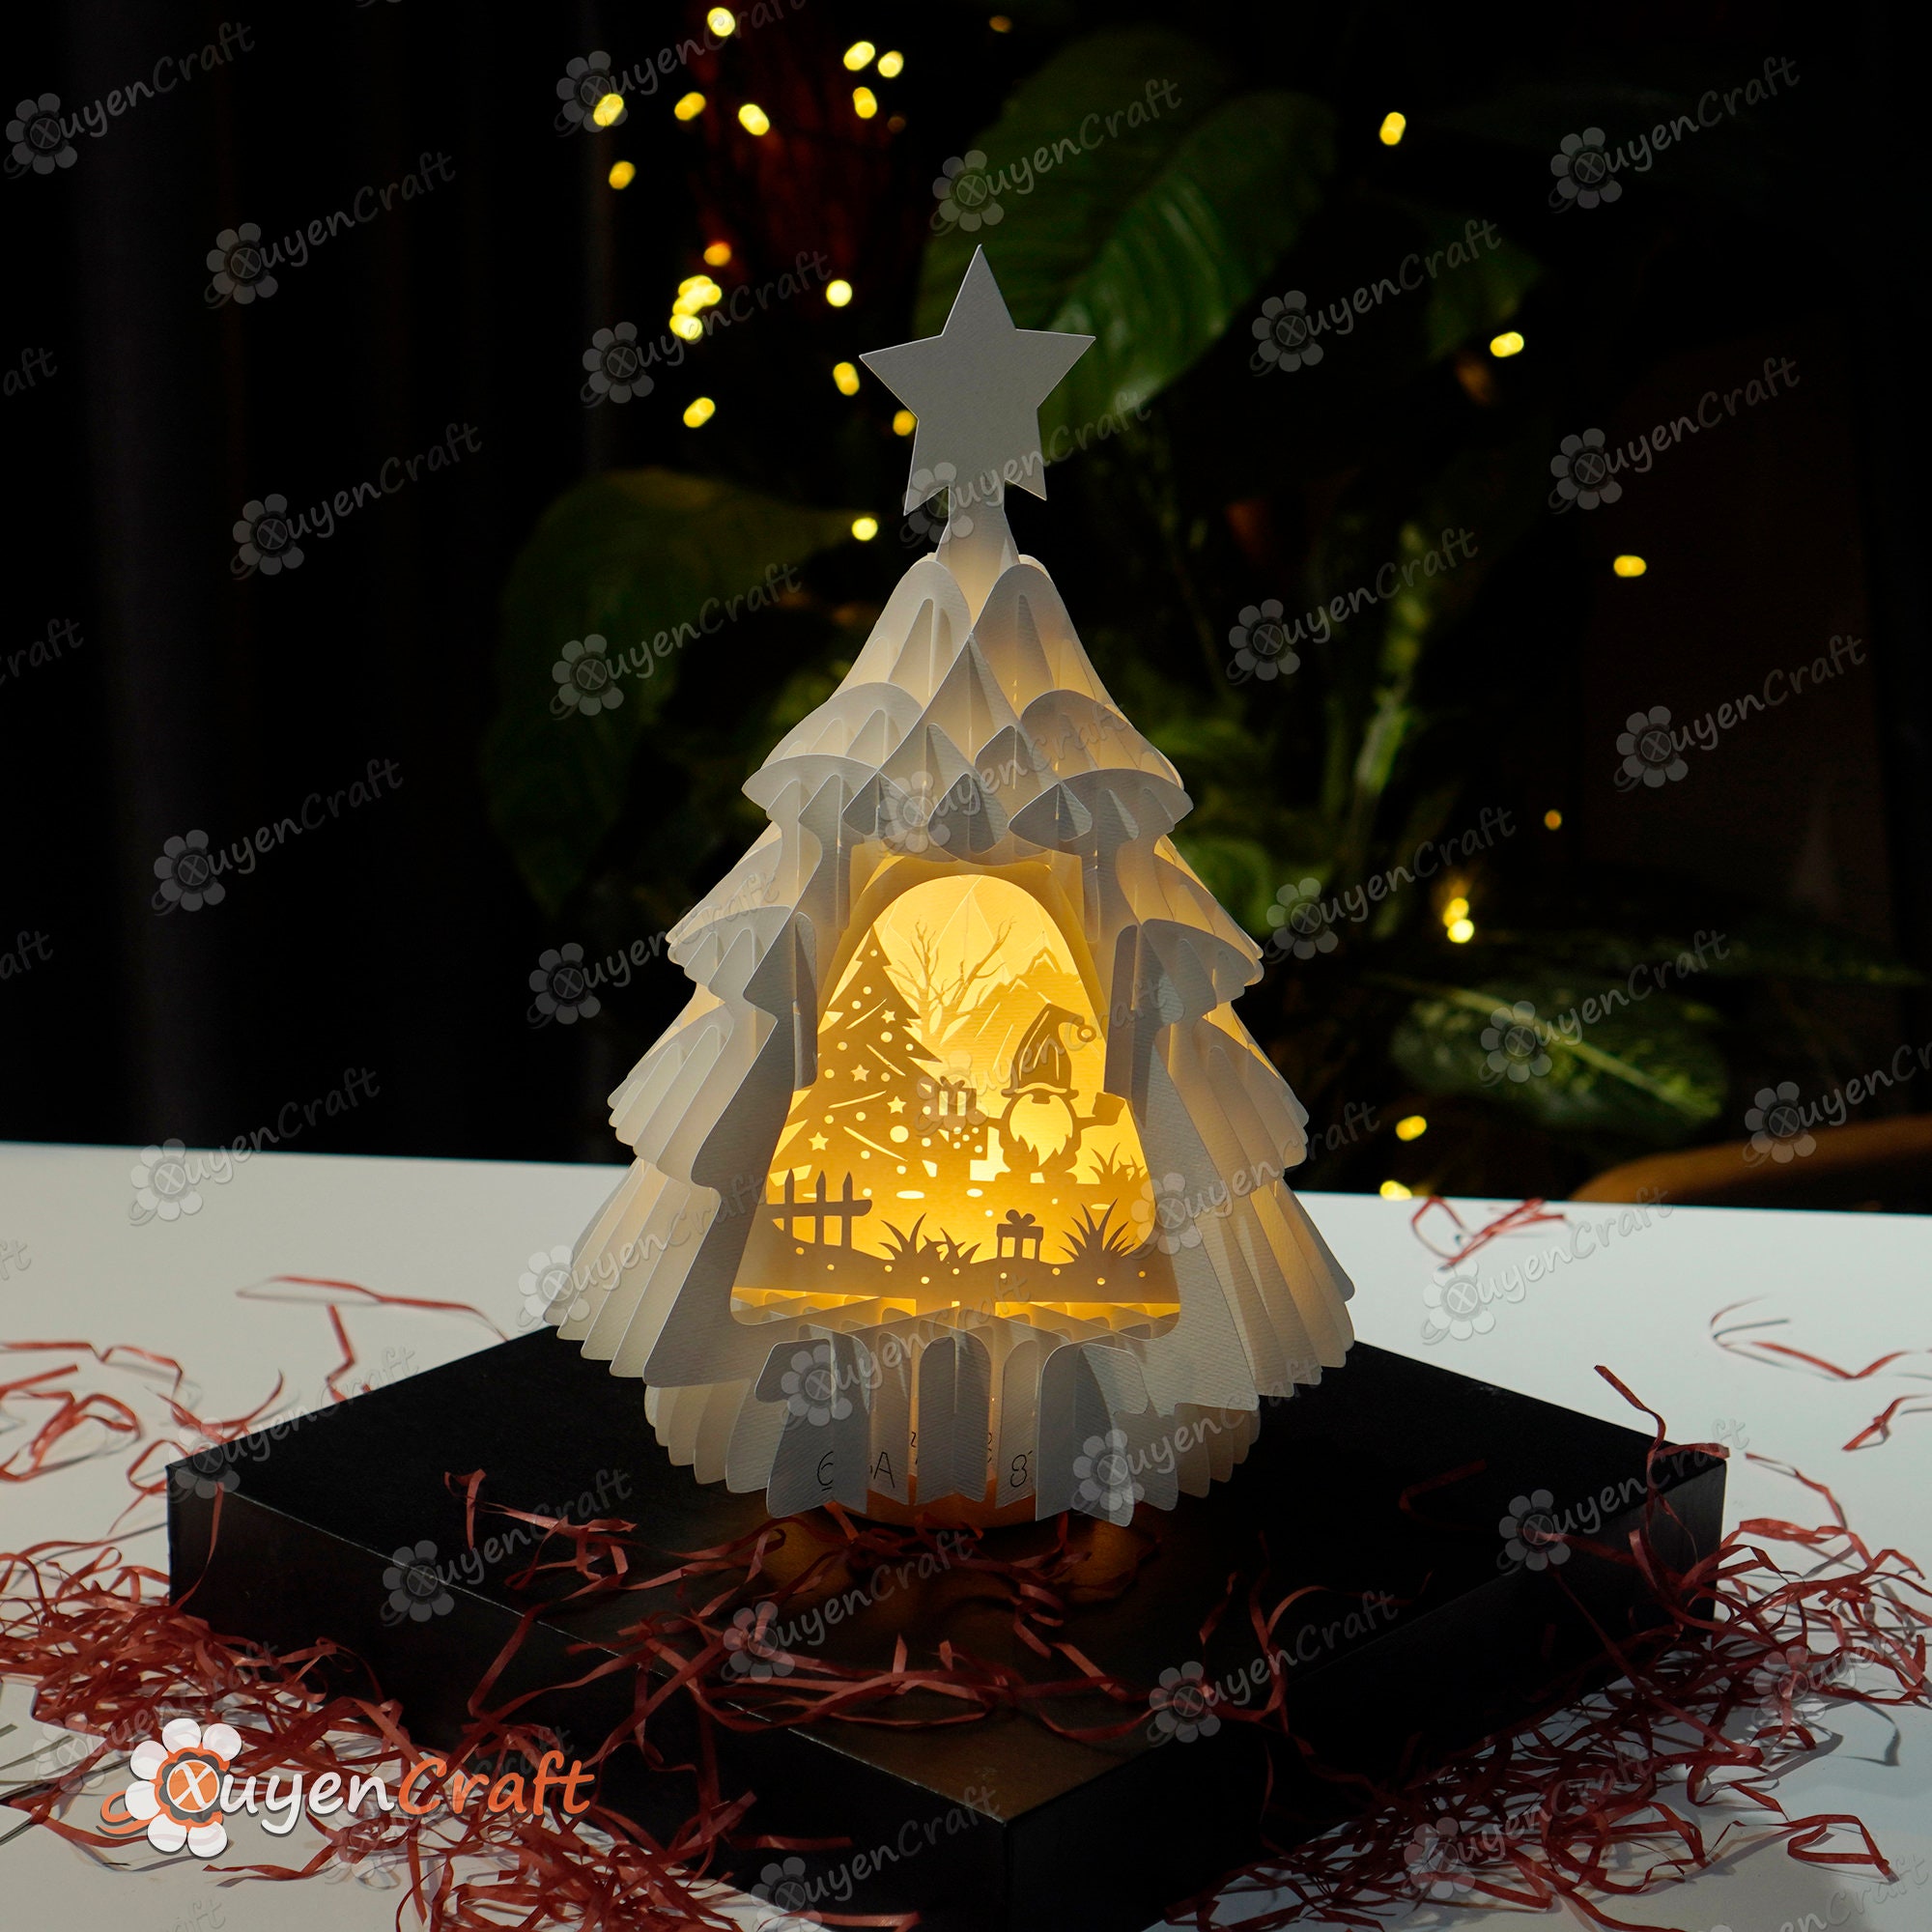 3D Pop Up SVG Templates créant La sphère du Père Noël pop-up pour Joyeux  Noël Cadeaux de Noël DIY, Boîte à lumière Papercut, Kirigami DIY -   France